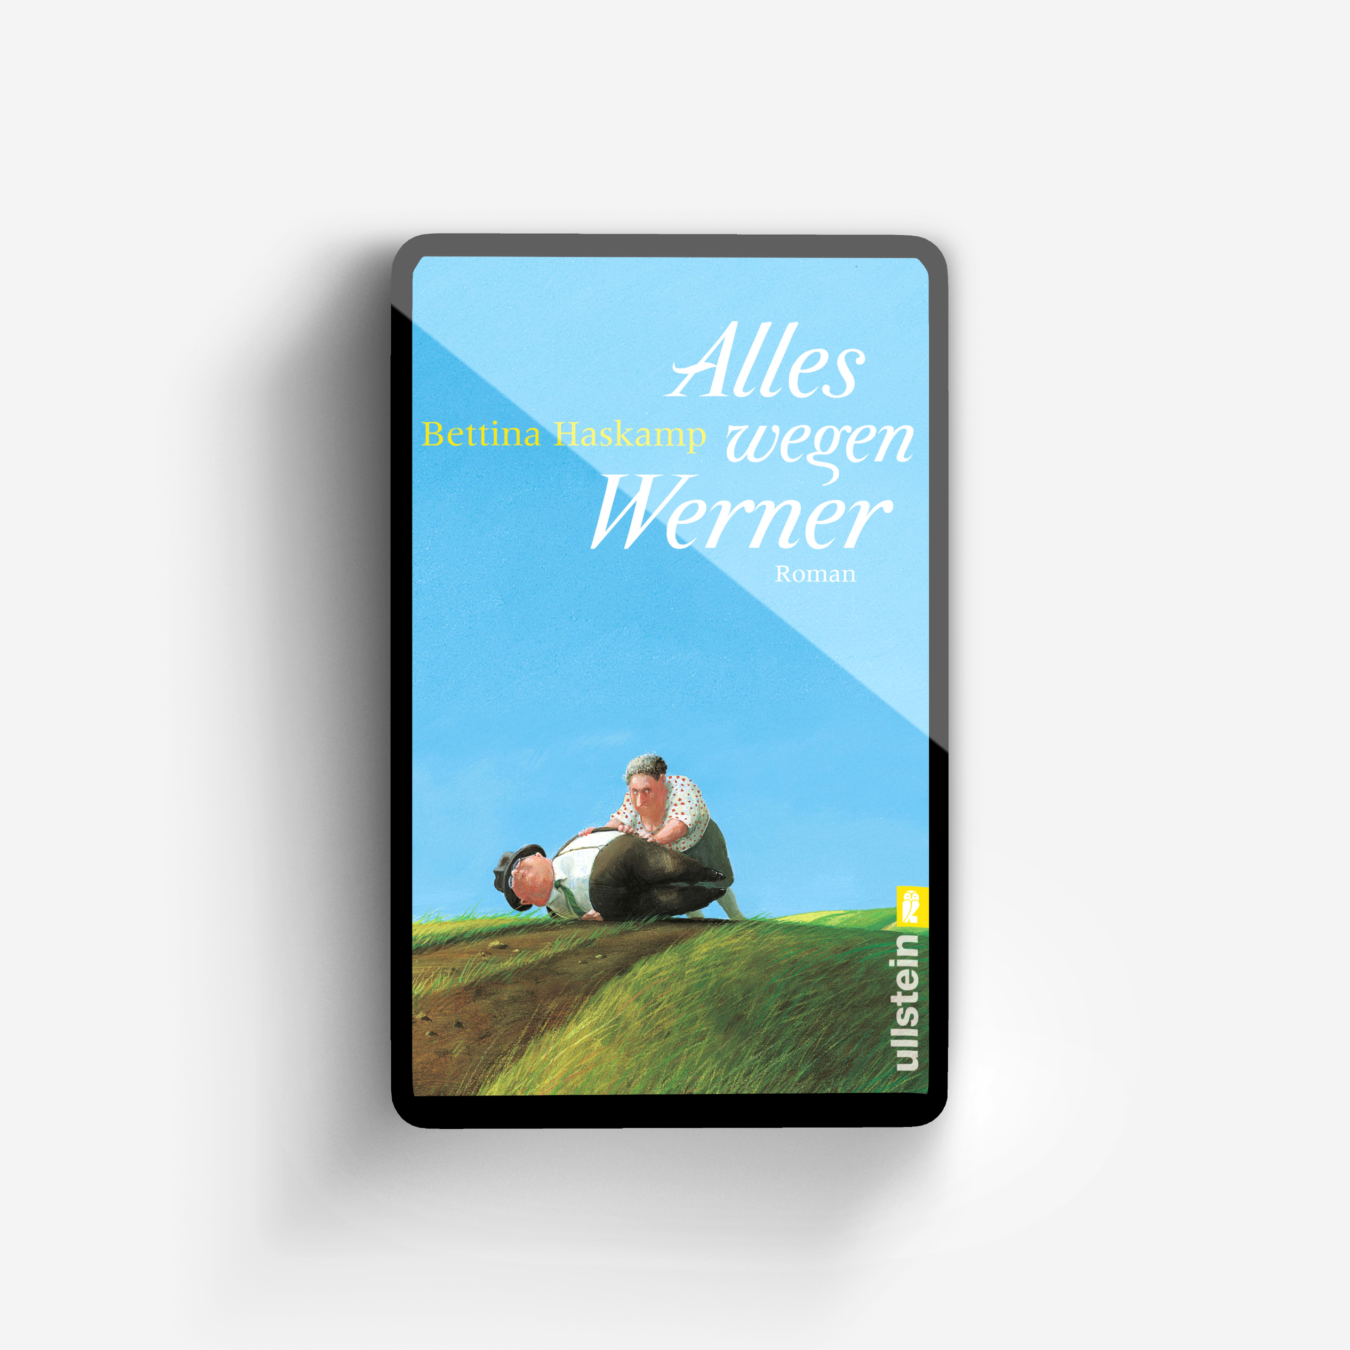 Buchcover von Alles wegen Werner